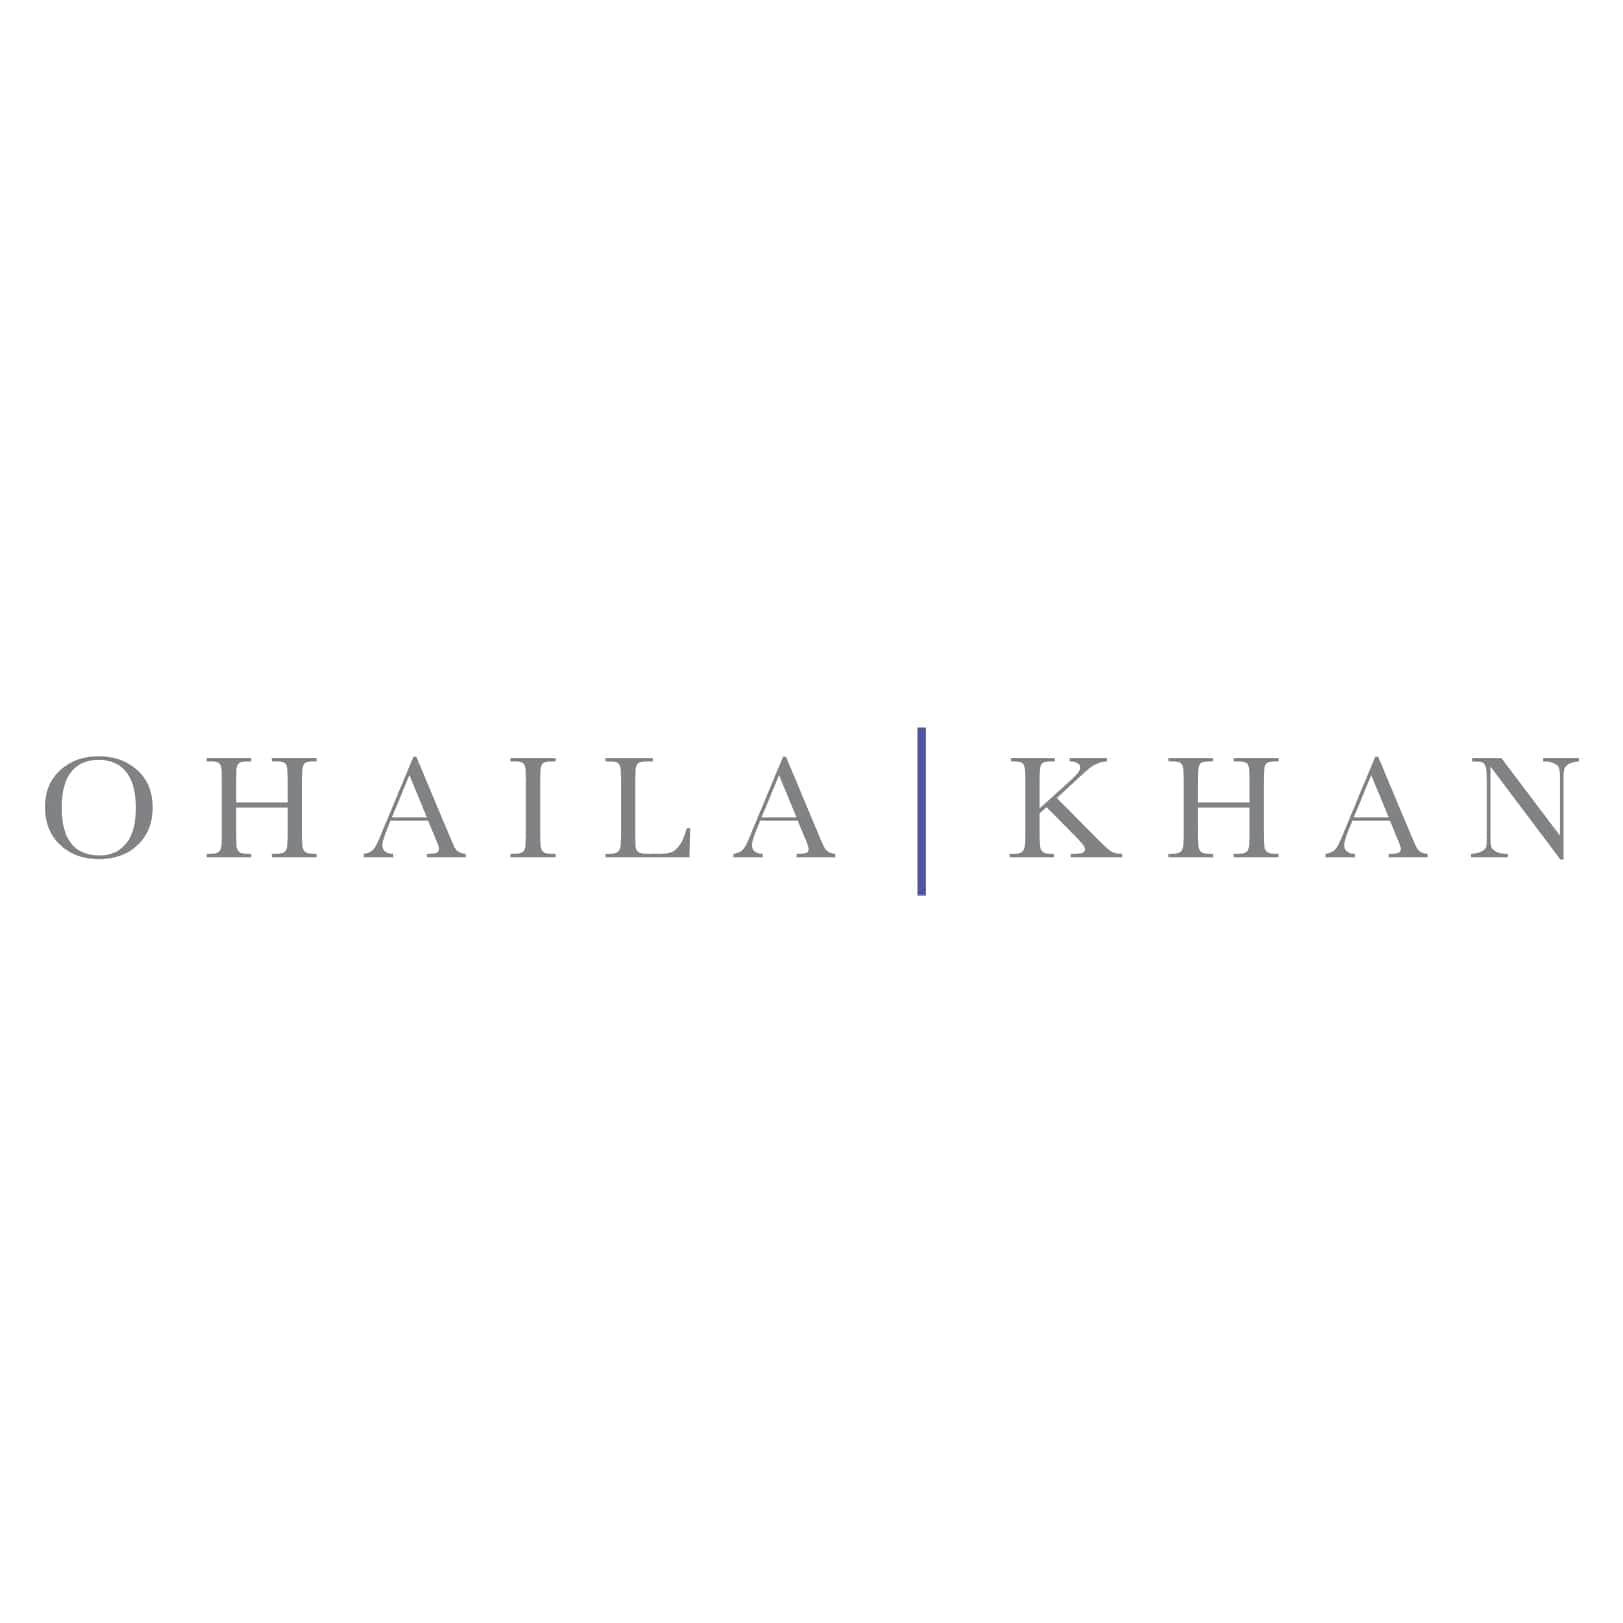 About Ohaila Khan